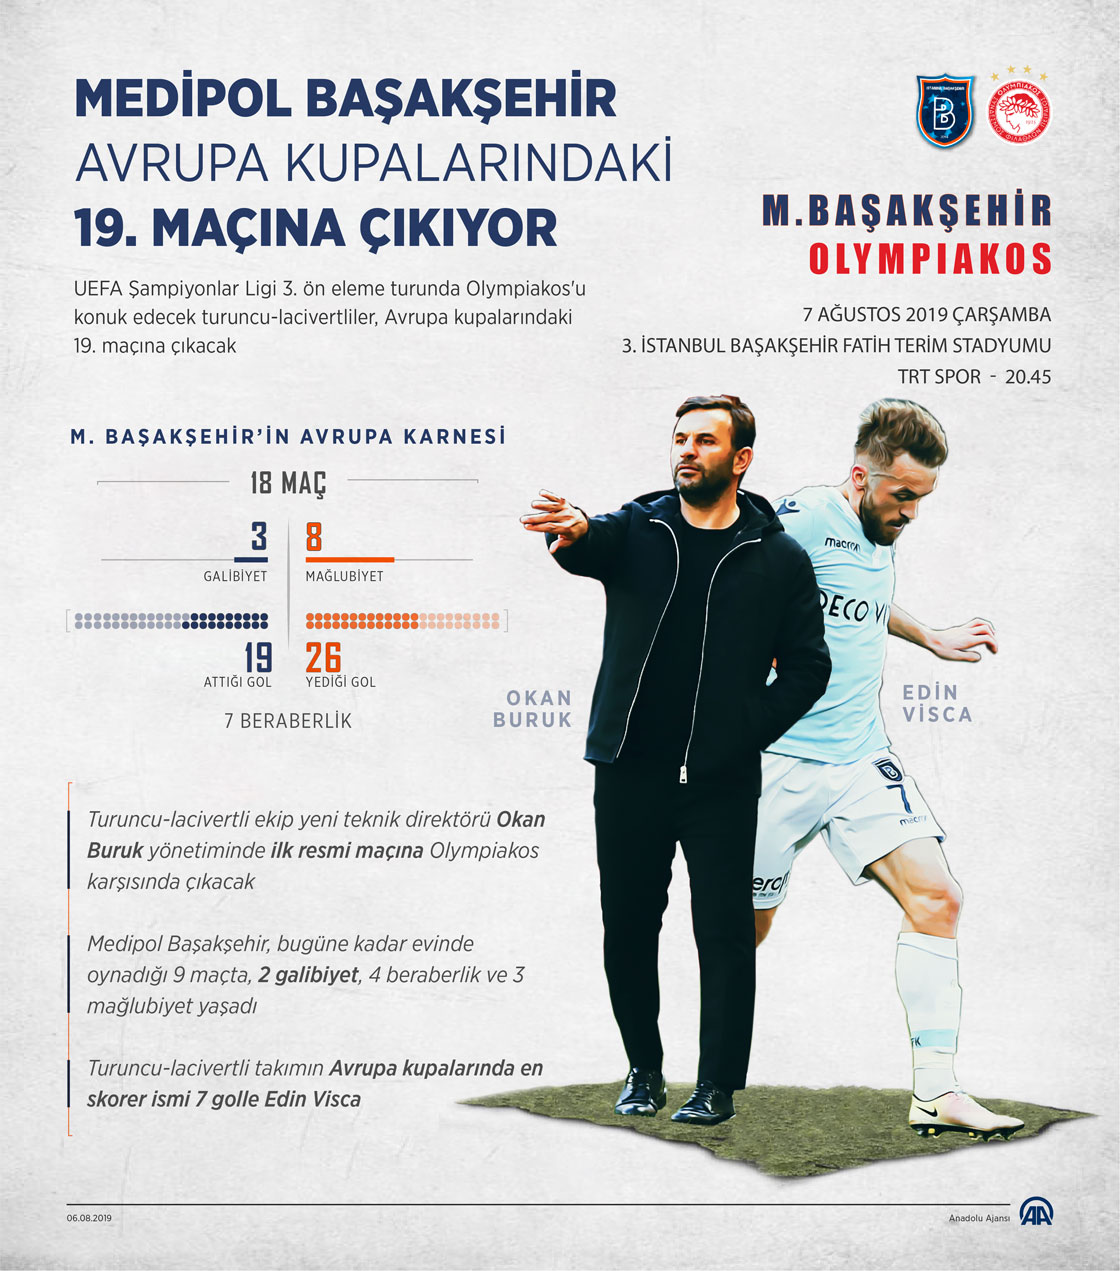 Medipol Başakşehir, Avrupa kupalarındaki 19. maçına çıkıyor